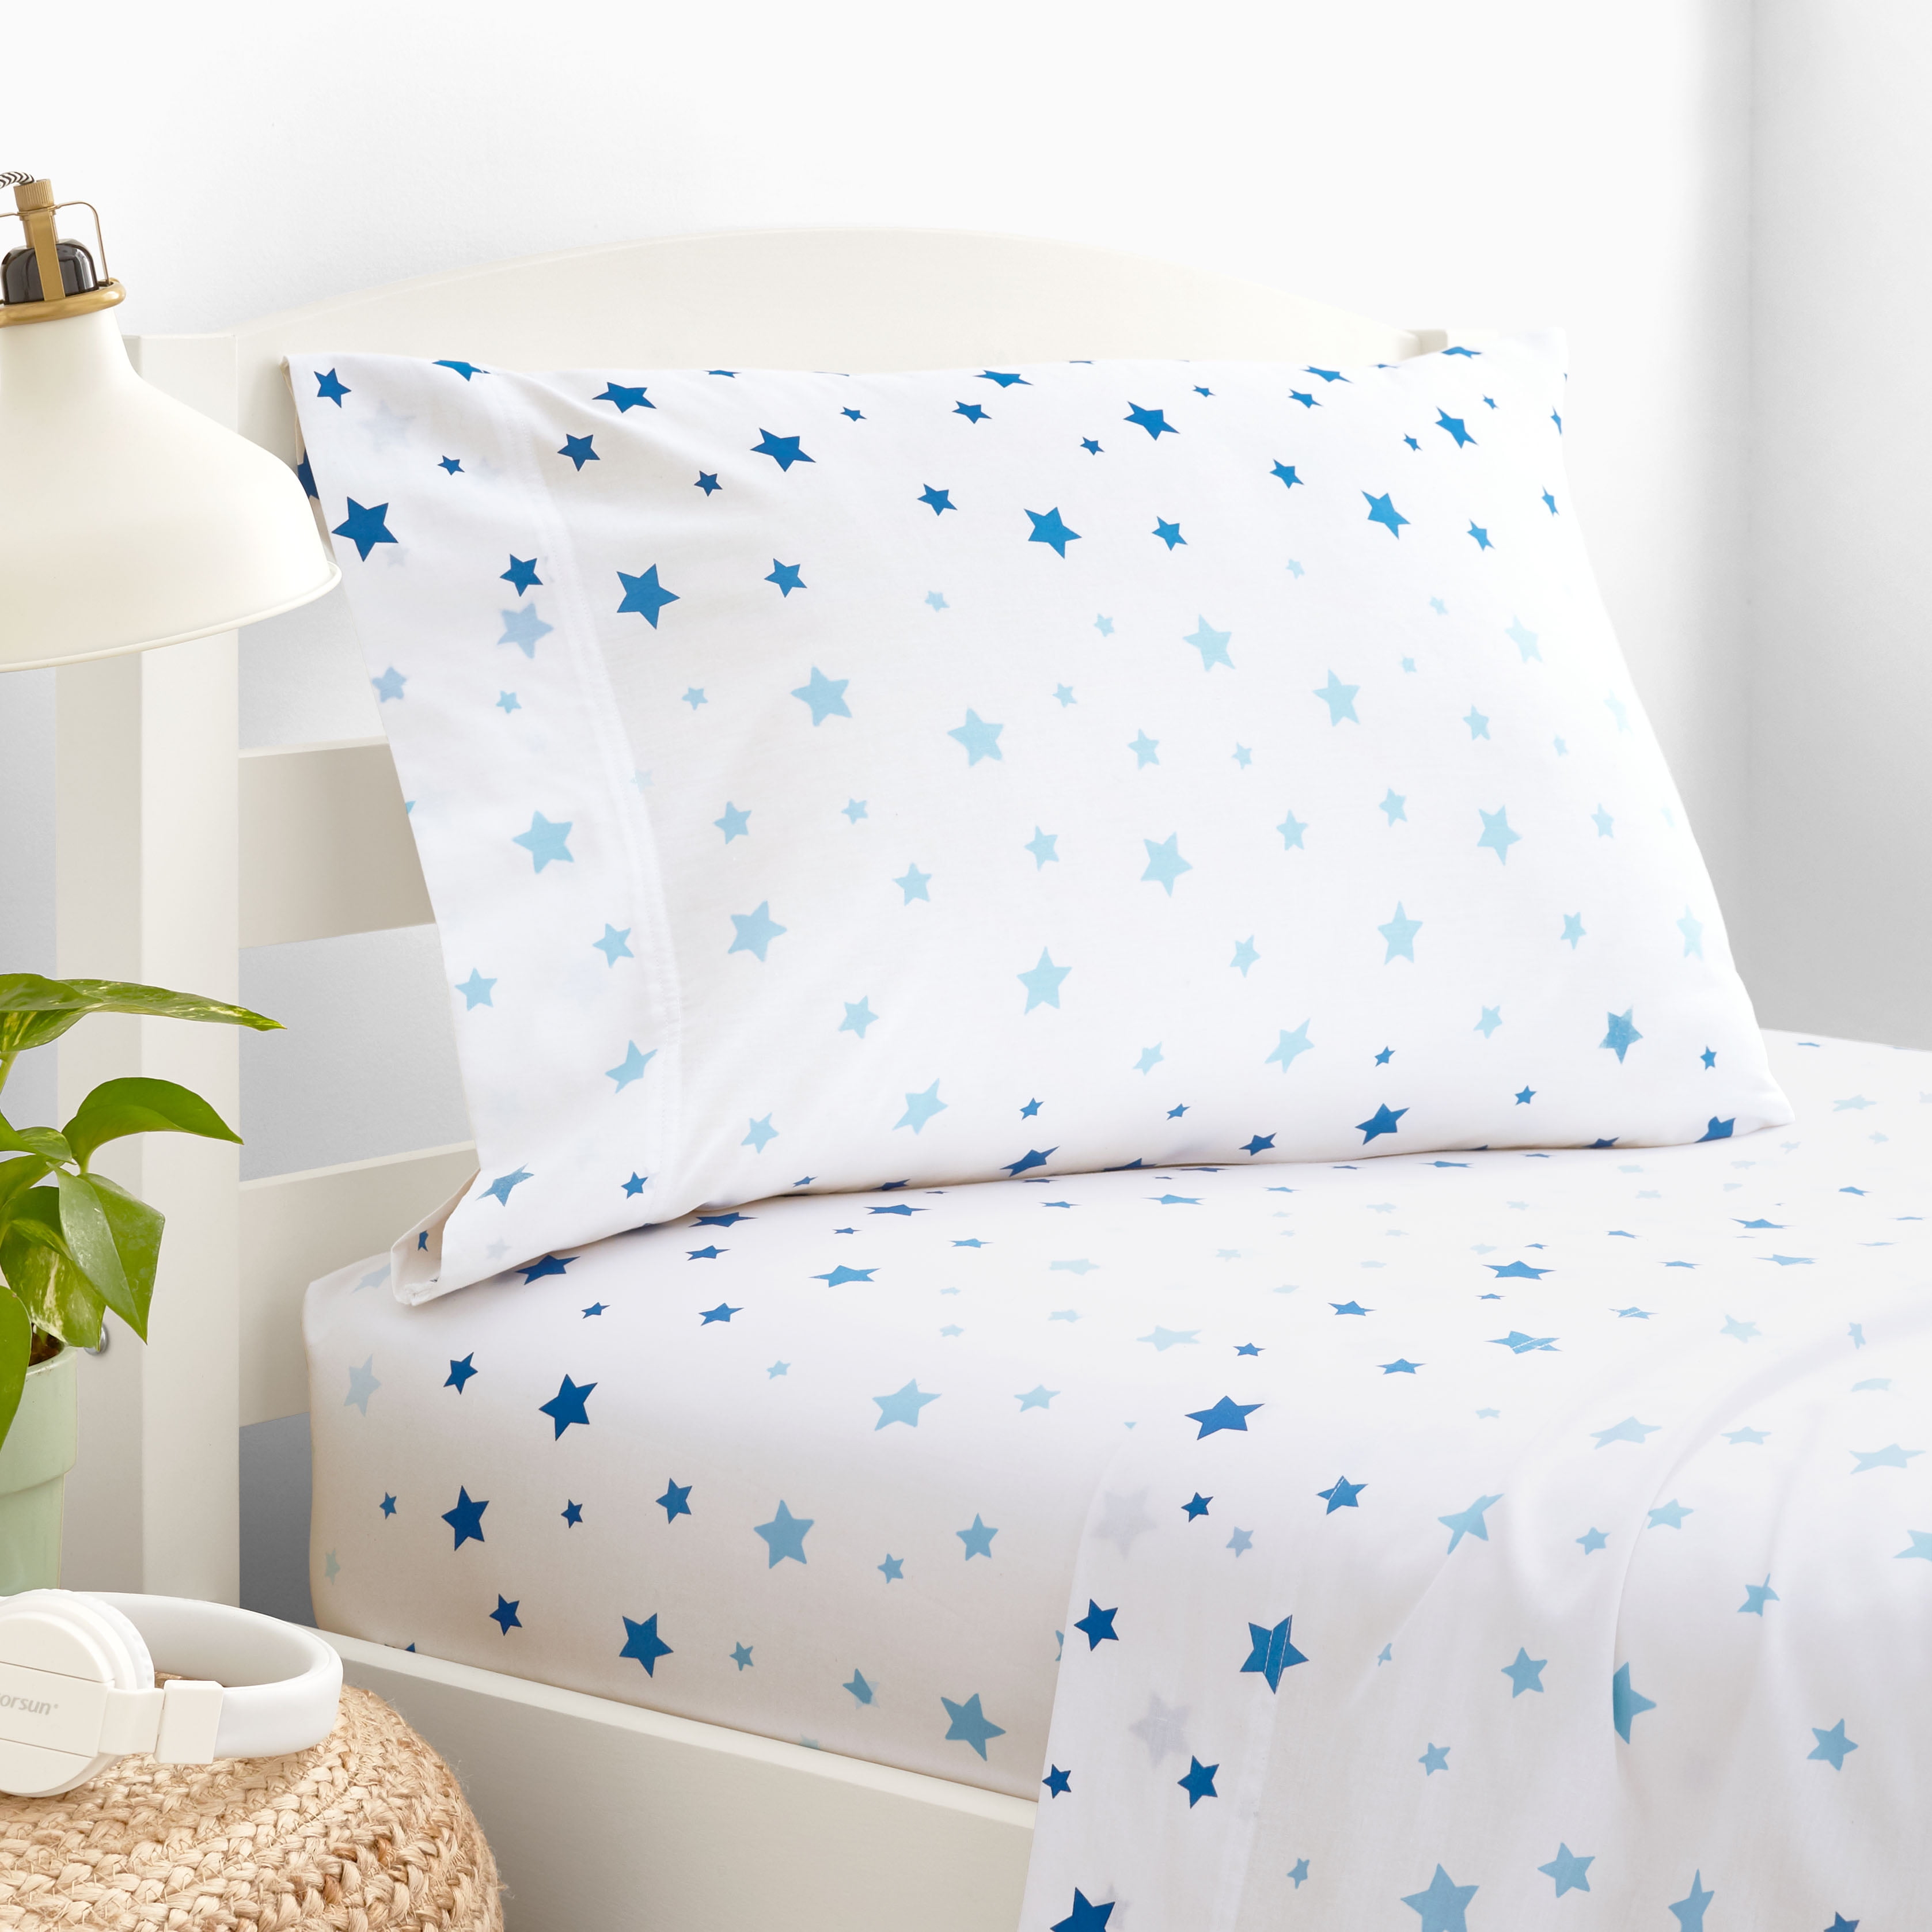 Carousel Designs Blush Pink Stars Toddler Bed Comforter 